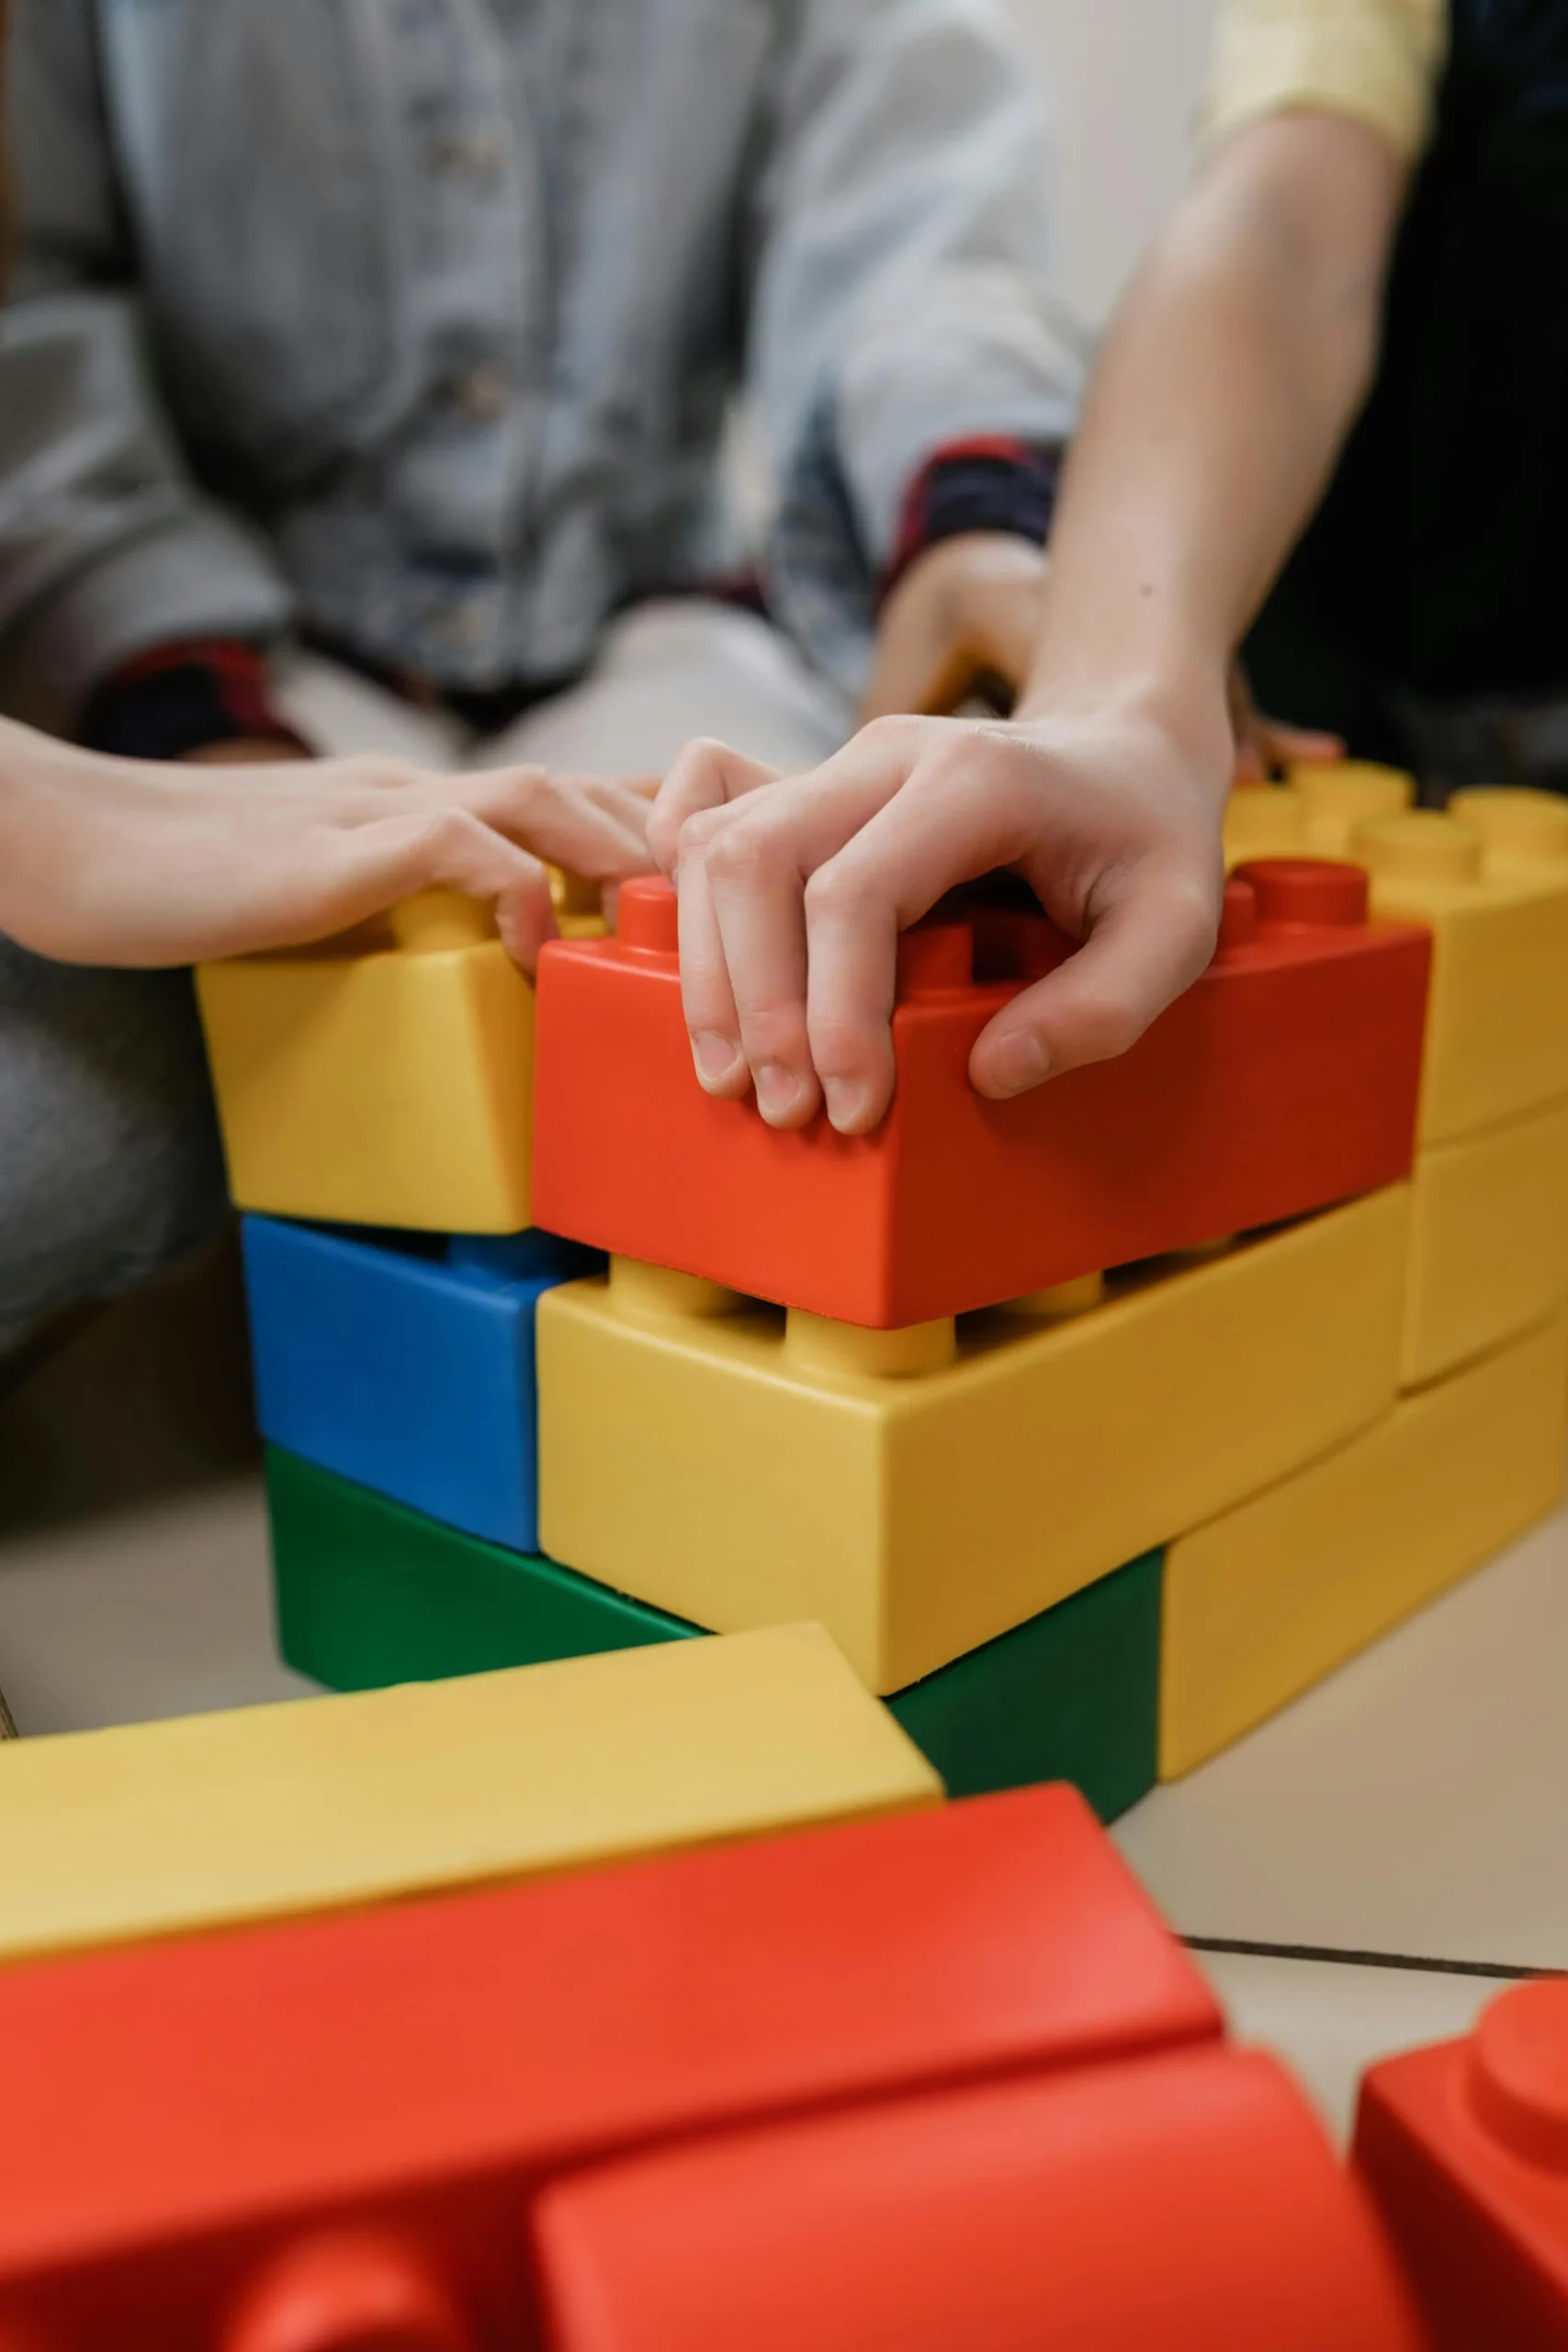 Se muestra en imagen las manos de unos niños apilando bloques de colores